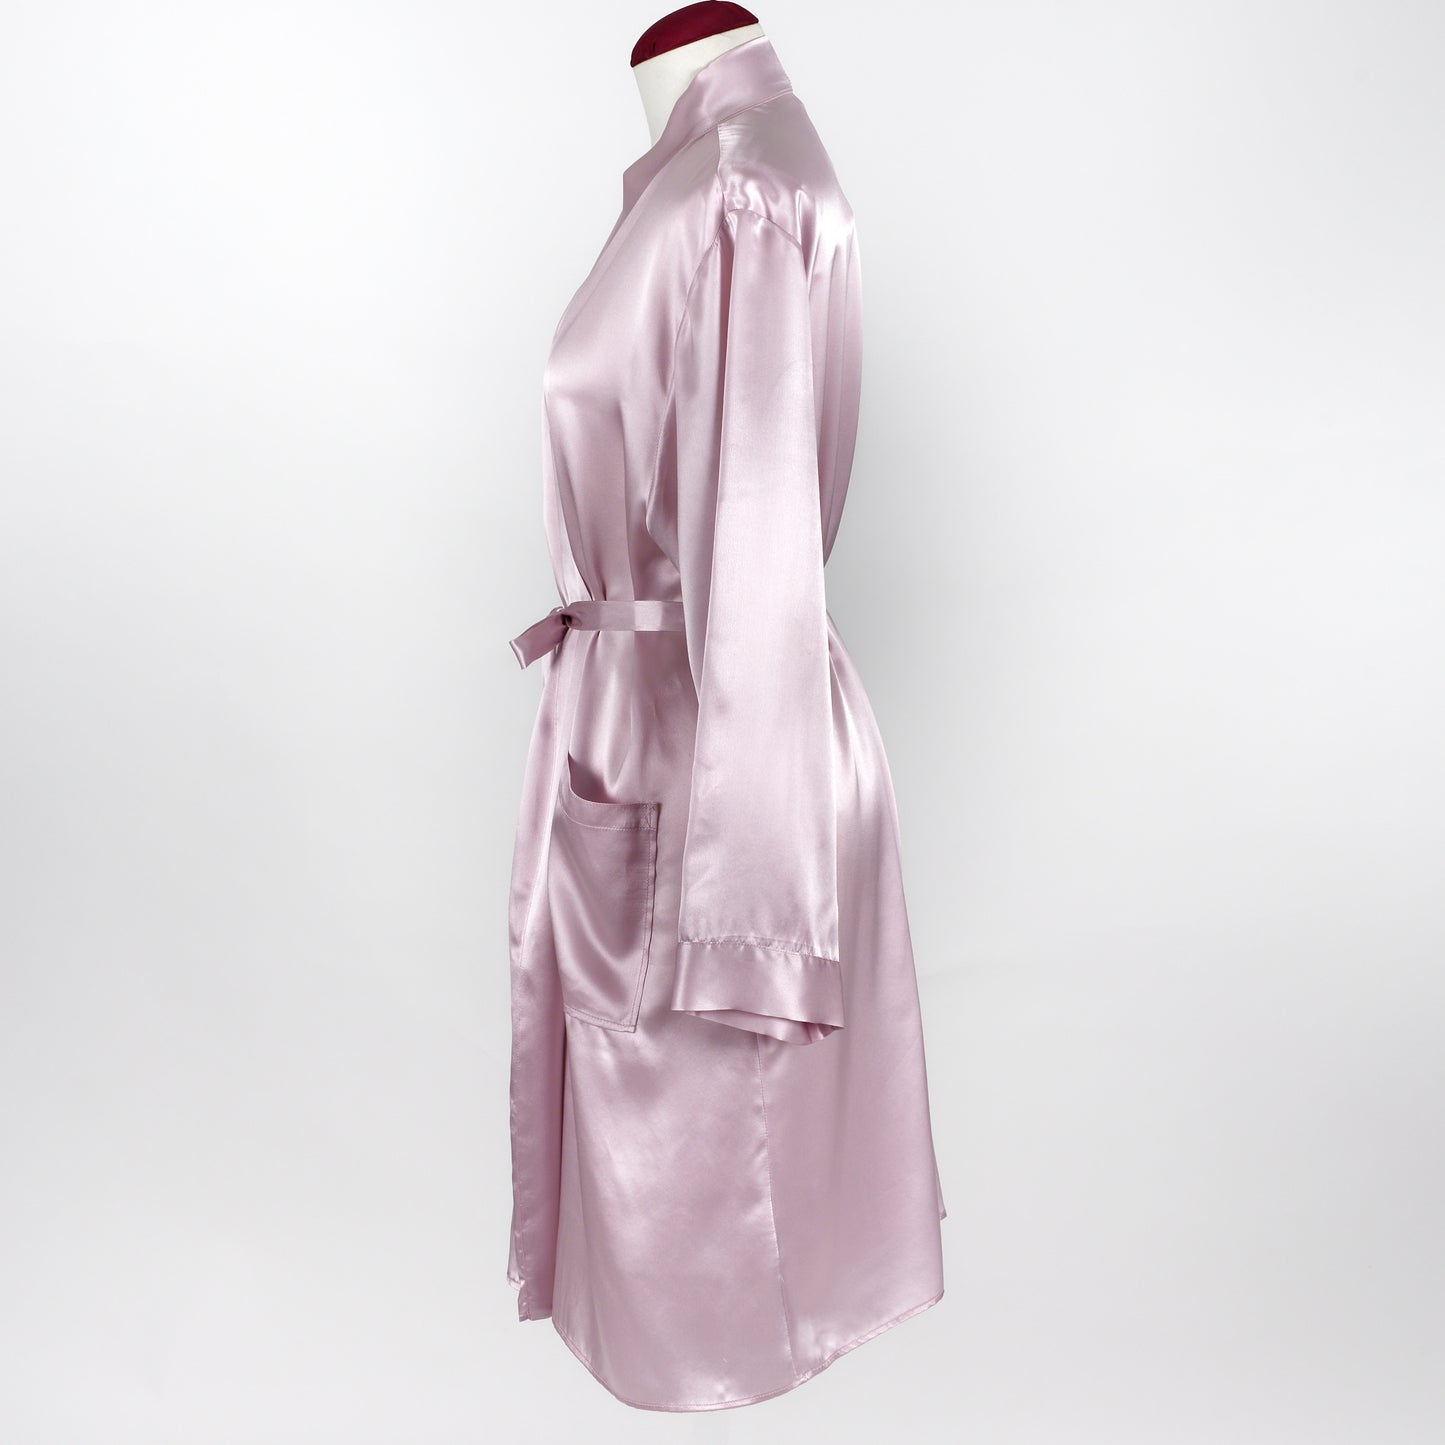 Silk dressing gown robe - Carmen Kirsten designer silk sleepwear